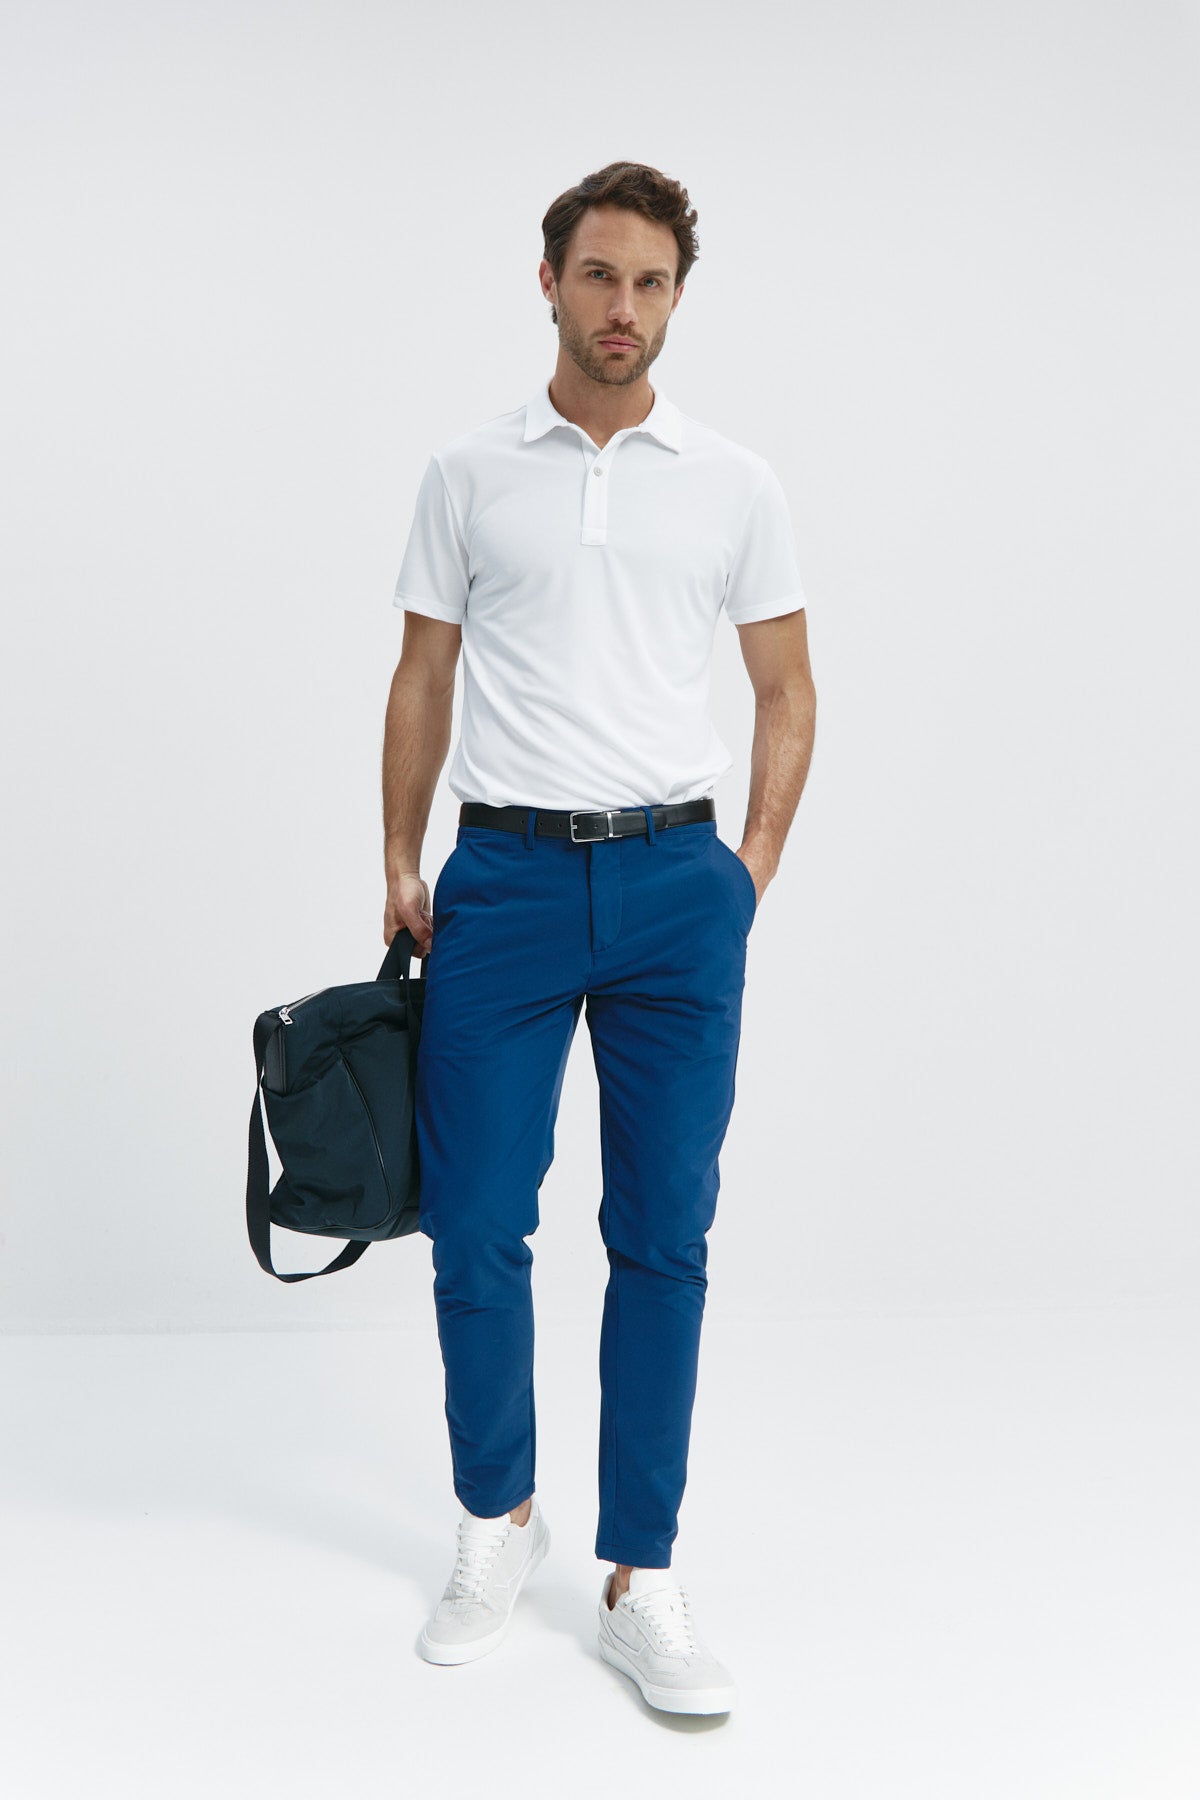 Pantalón para hombre azul marino: Pantalón chino slim azul marino para hombre con tecnología termorreguladora Coolmax. Foto cuerpo entero.